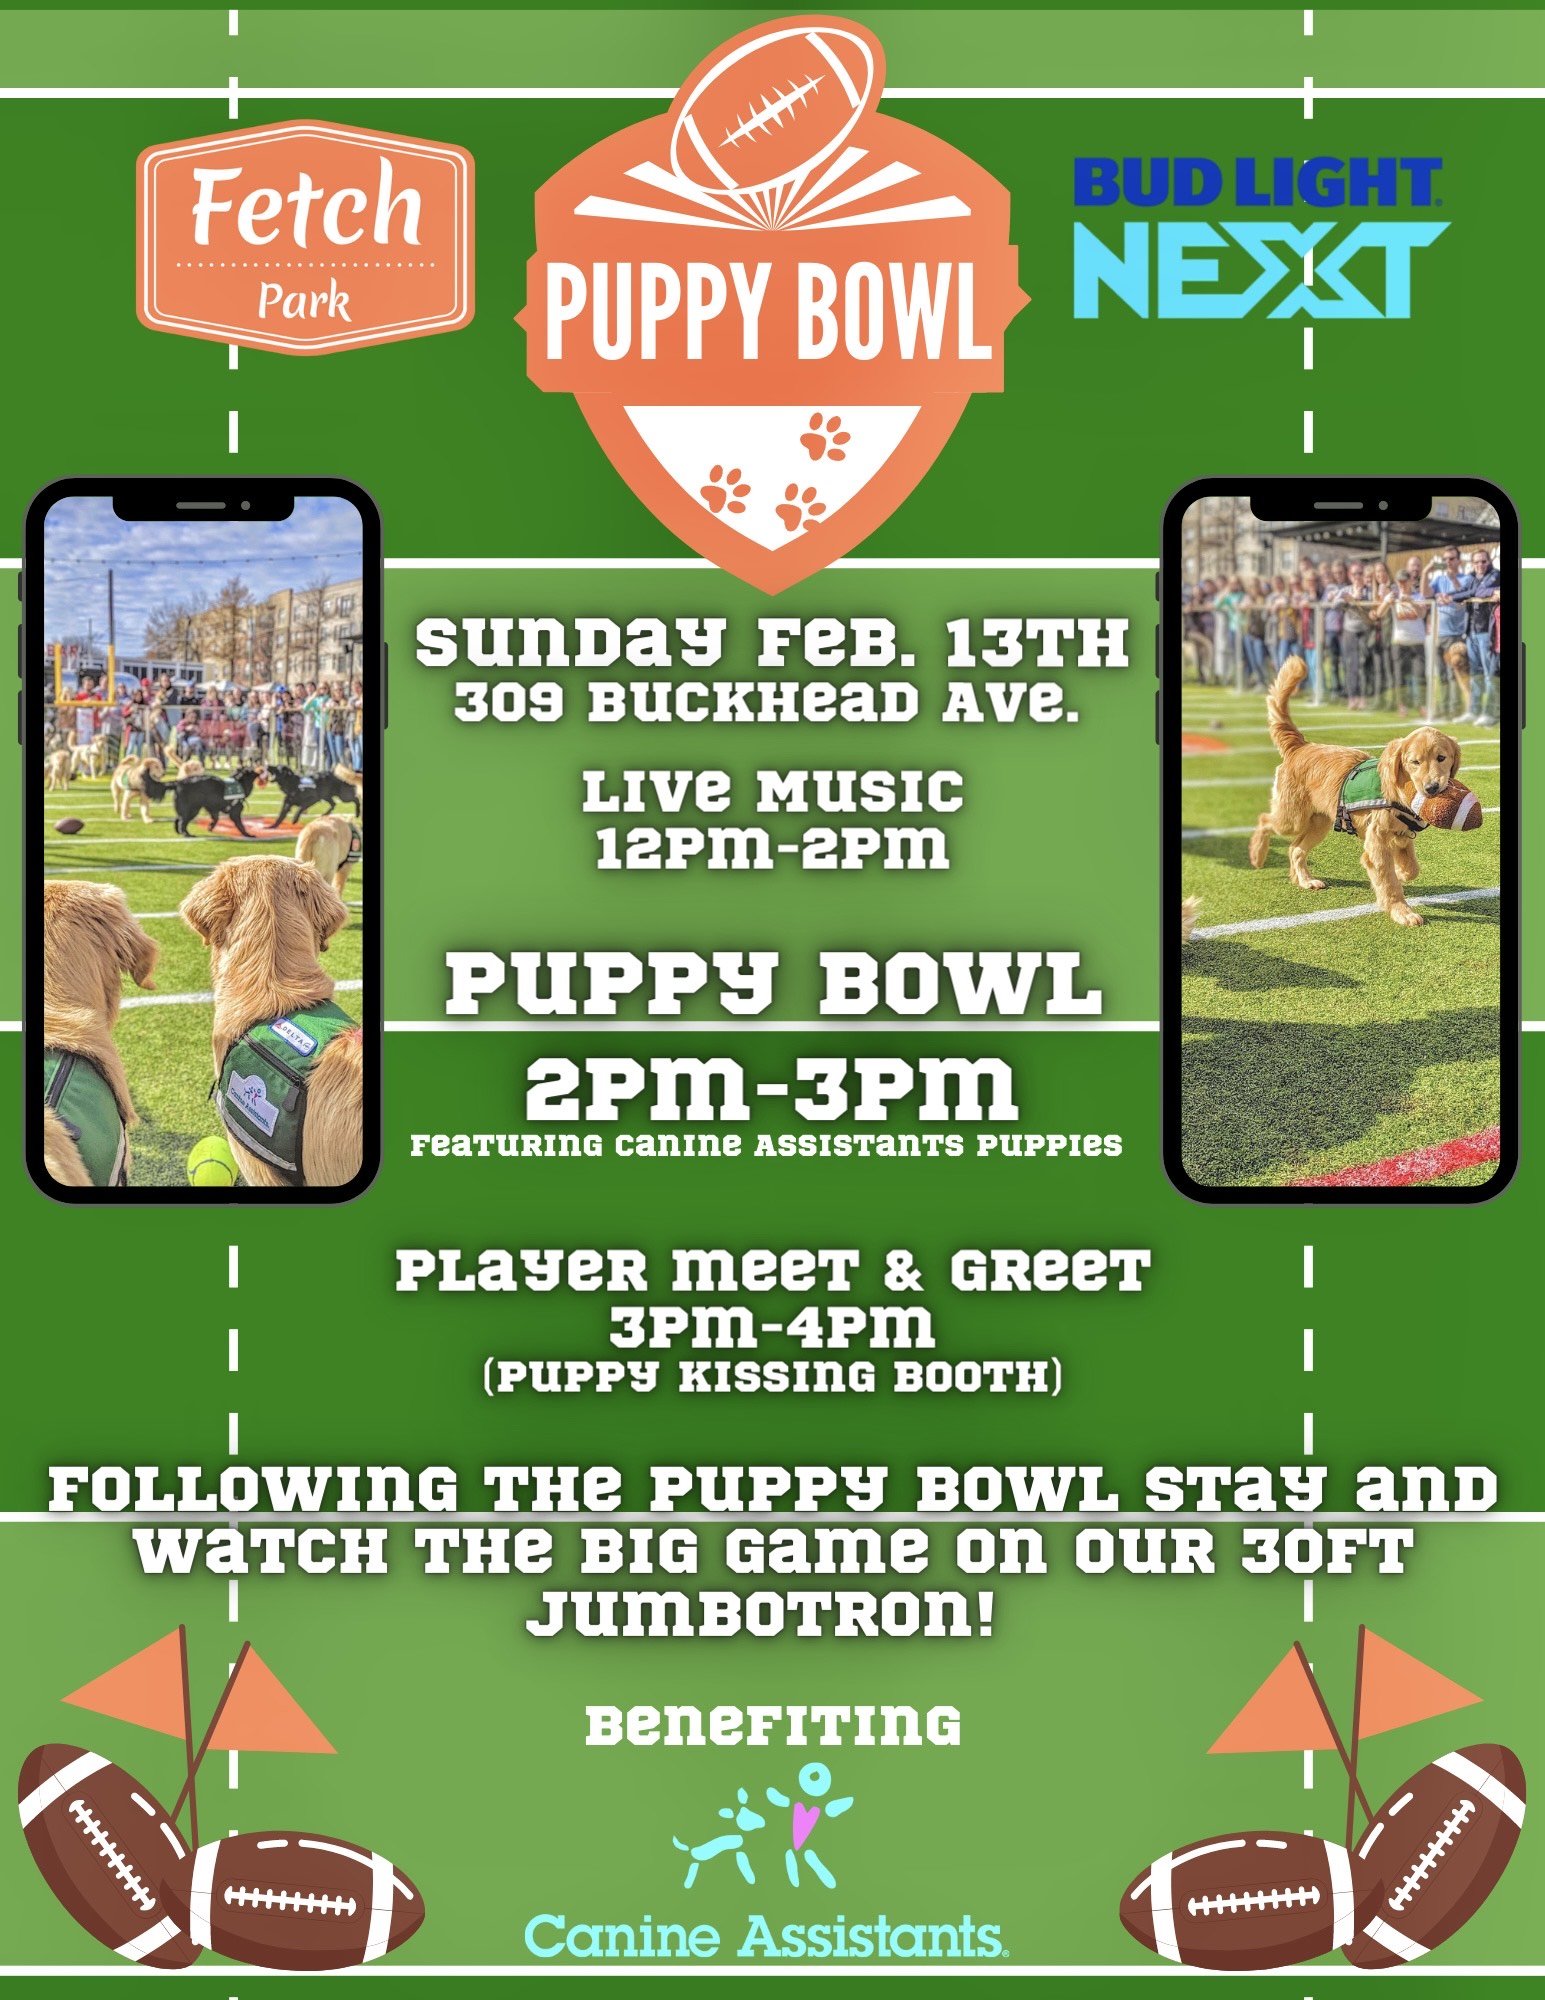 Fetch Park Puppy Bowl — Buckhead Village District